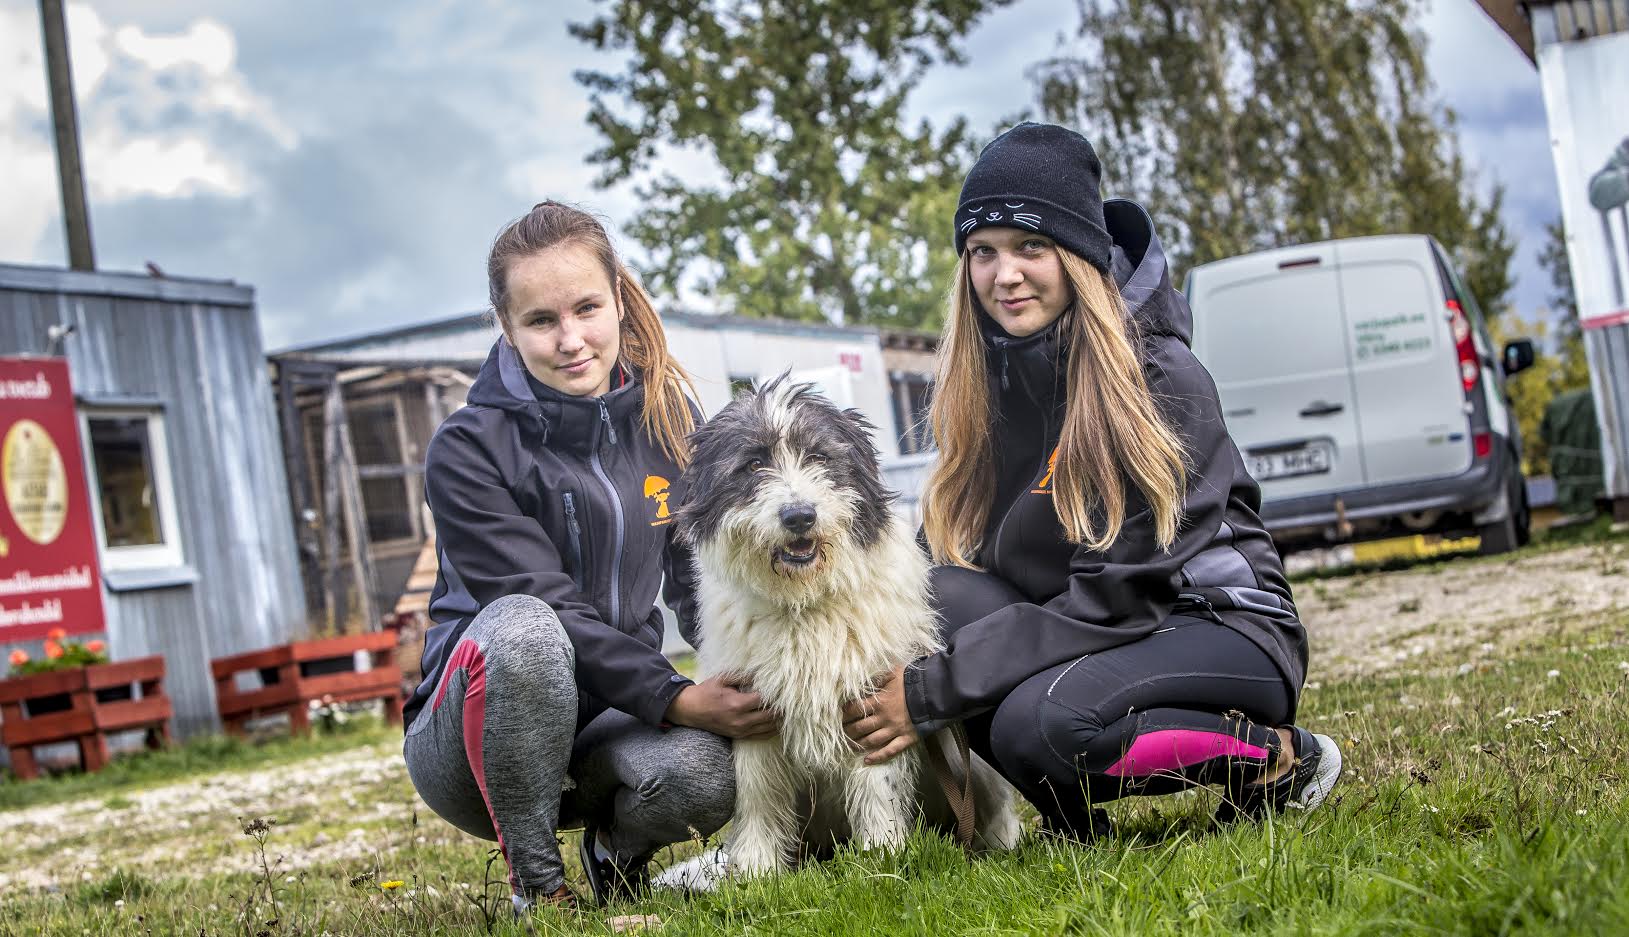 Varjupaiga töötajate Elise Hartmanni ja Marlis Simmeri sõnul ollakse kesistes tingimustes olukorraga harjunud, kuid nad leiavad, et muutused on ka loomadele väga hädavajalikud. Varjupaiga värske hoolealune on sõbralik koer Bim, kes sattus Võru loomade varjupaika üle piiri Lätist. Foto: AIGAR NAGEL